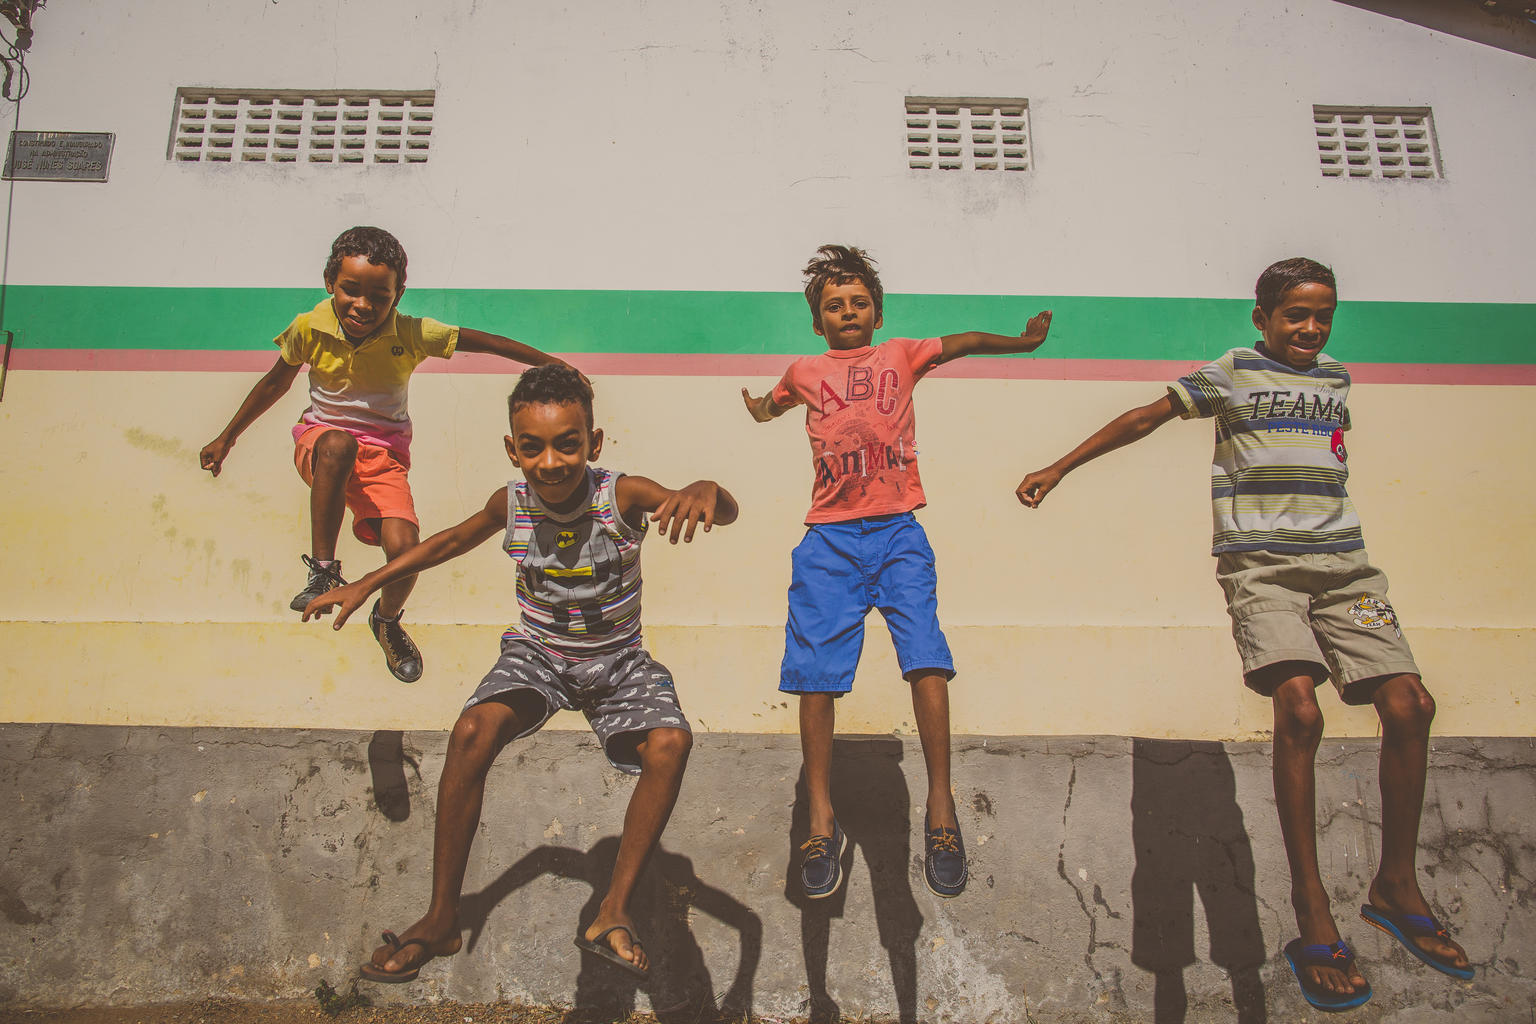 Quatro meninos pulam enquanto olham para a câmera. No fundo, a parede de uma escola